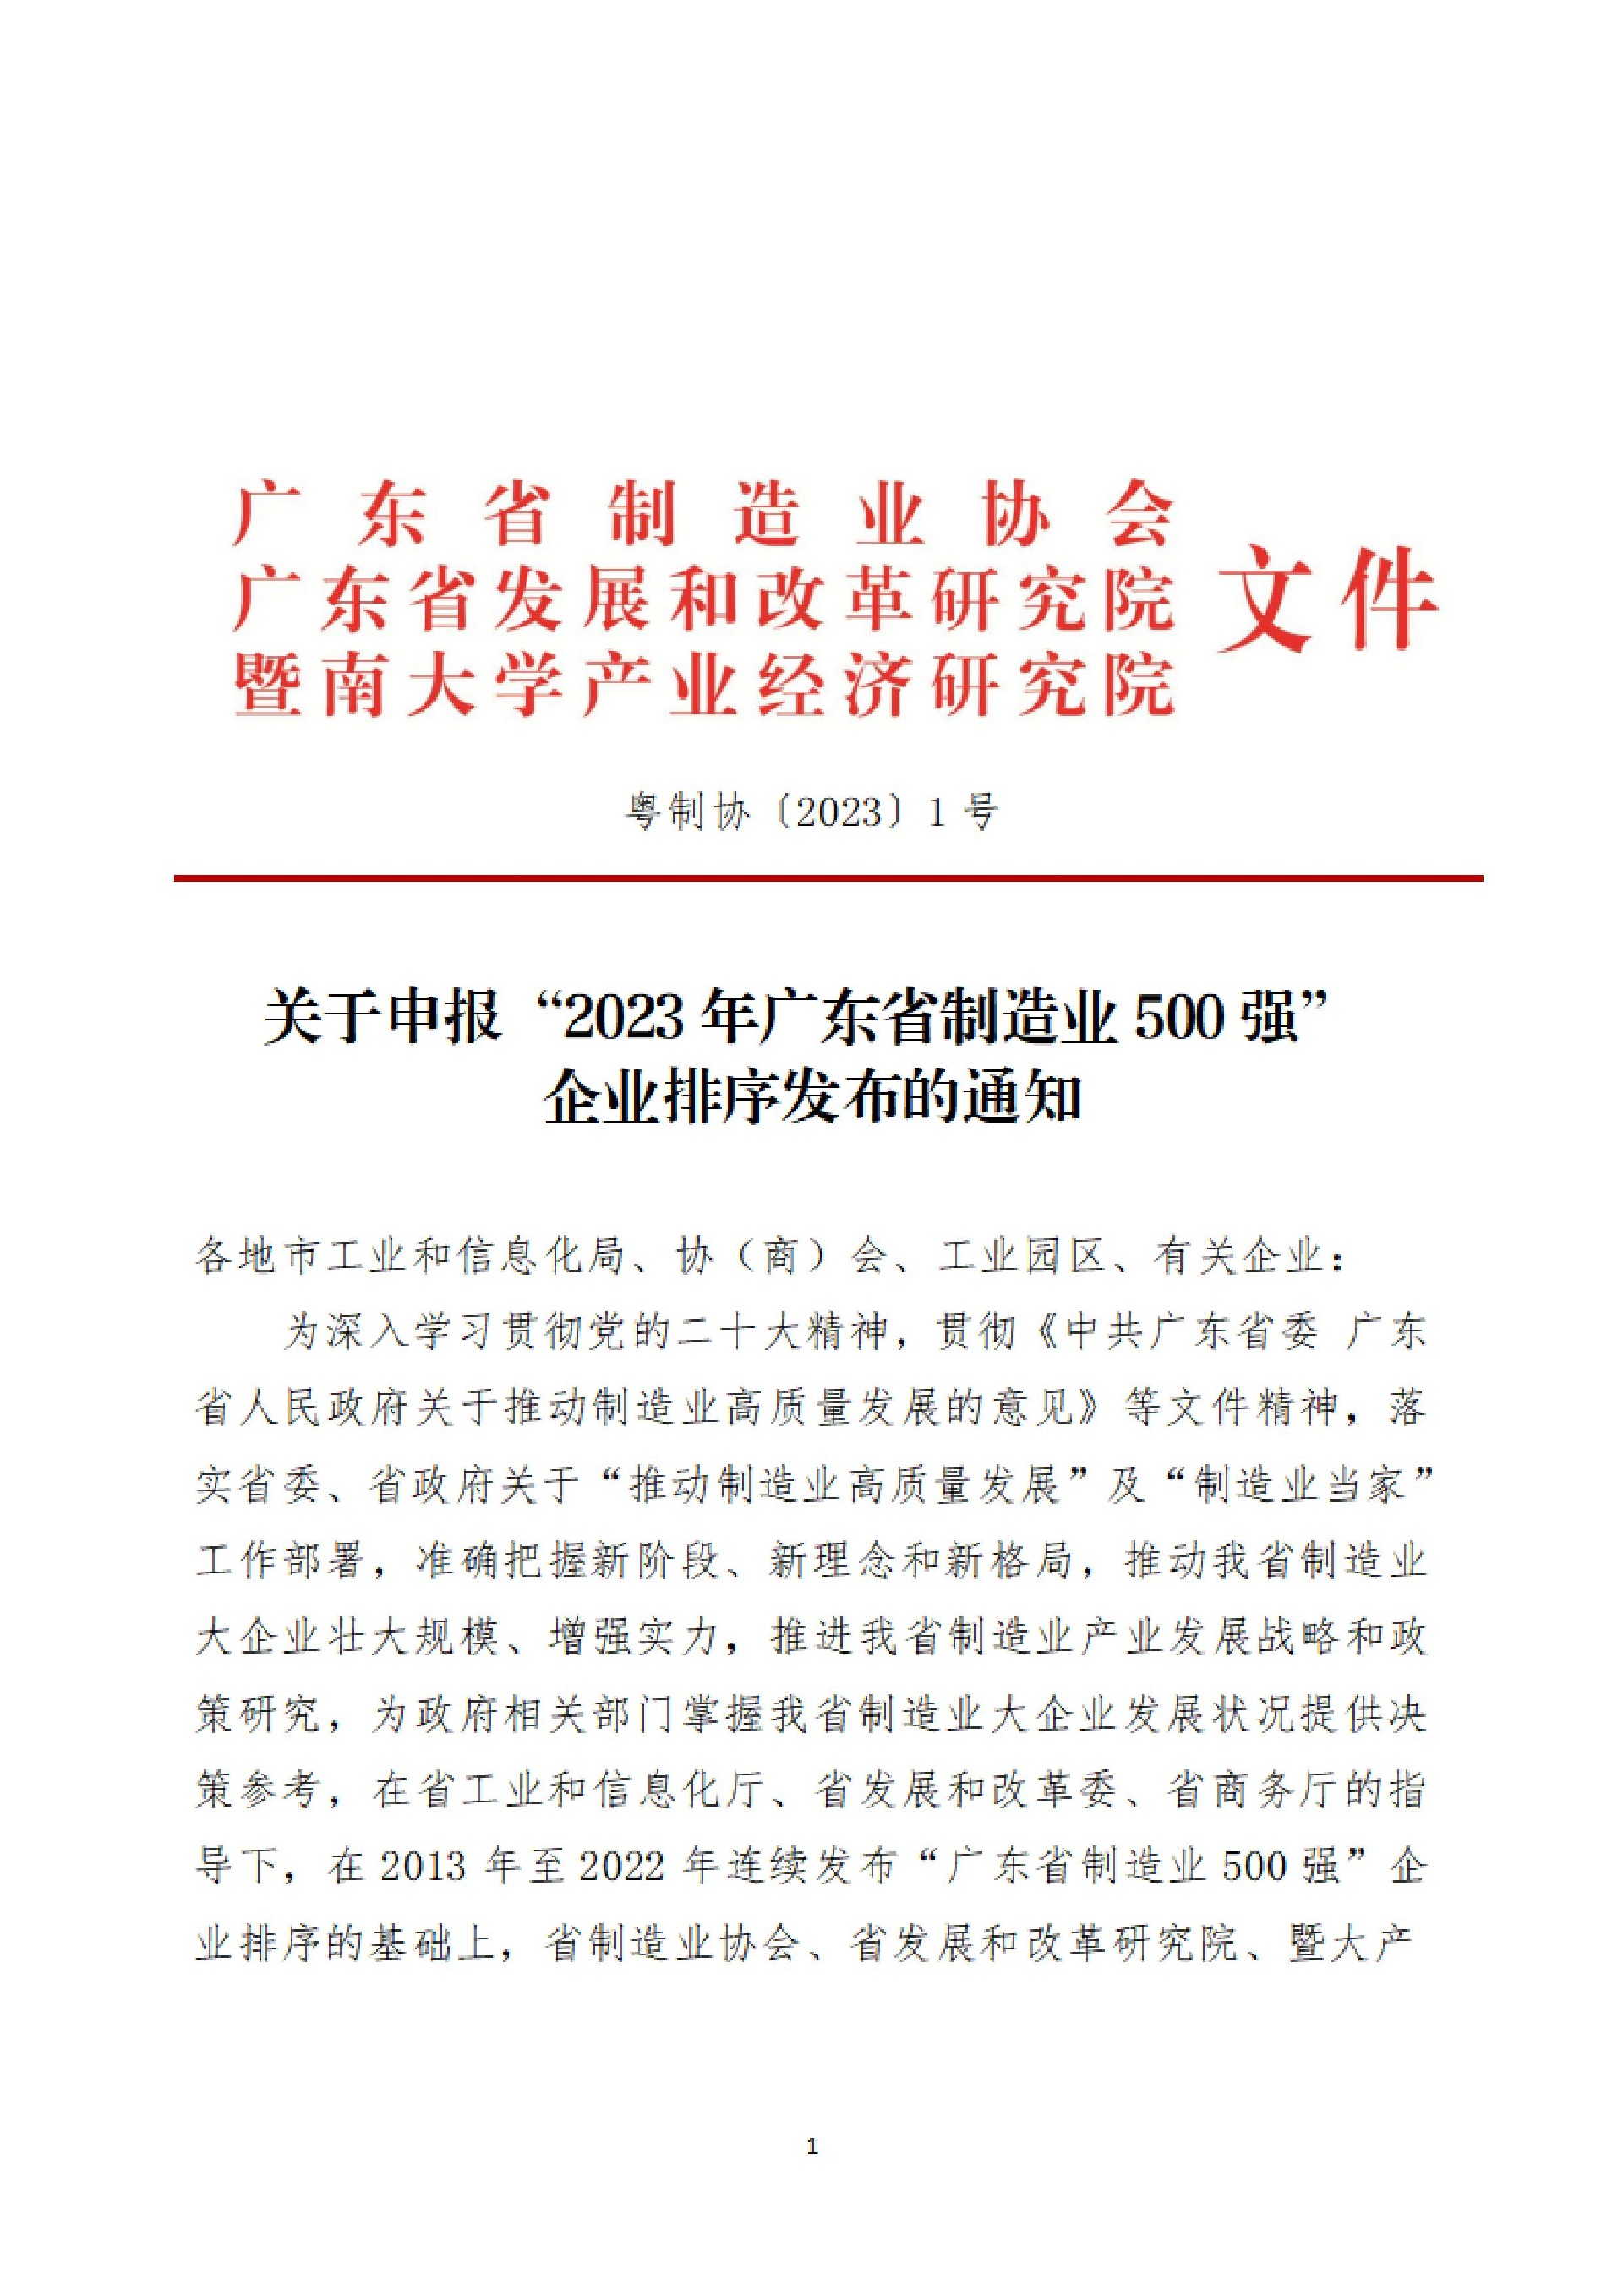 1号文-关于申报“2023年广东省制造业500强”企业排序发布的通知